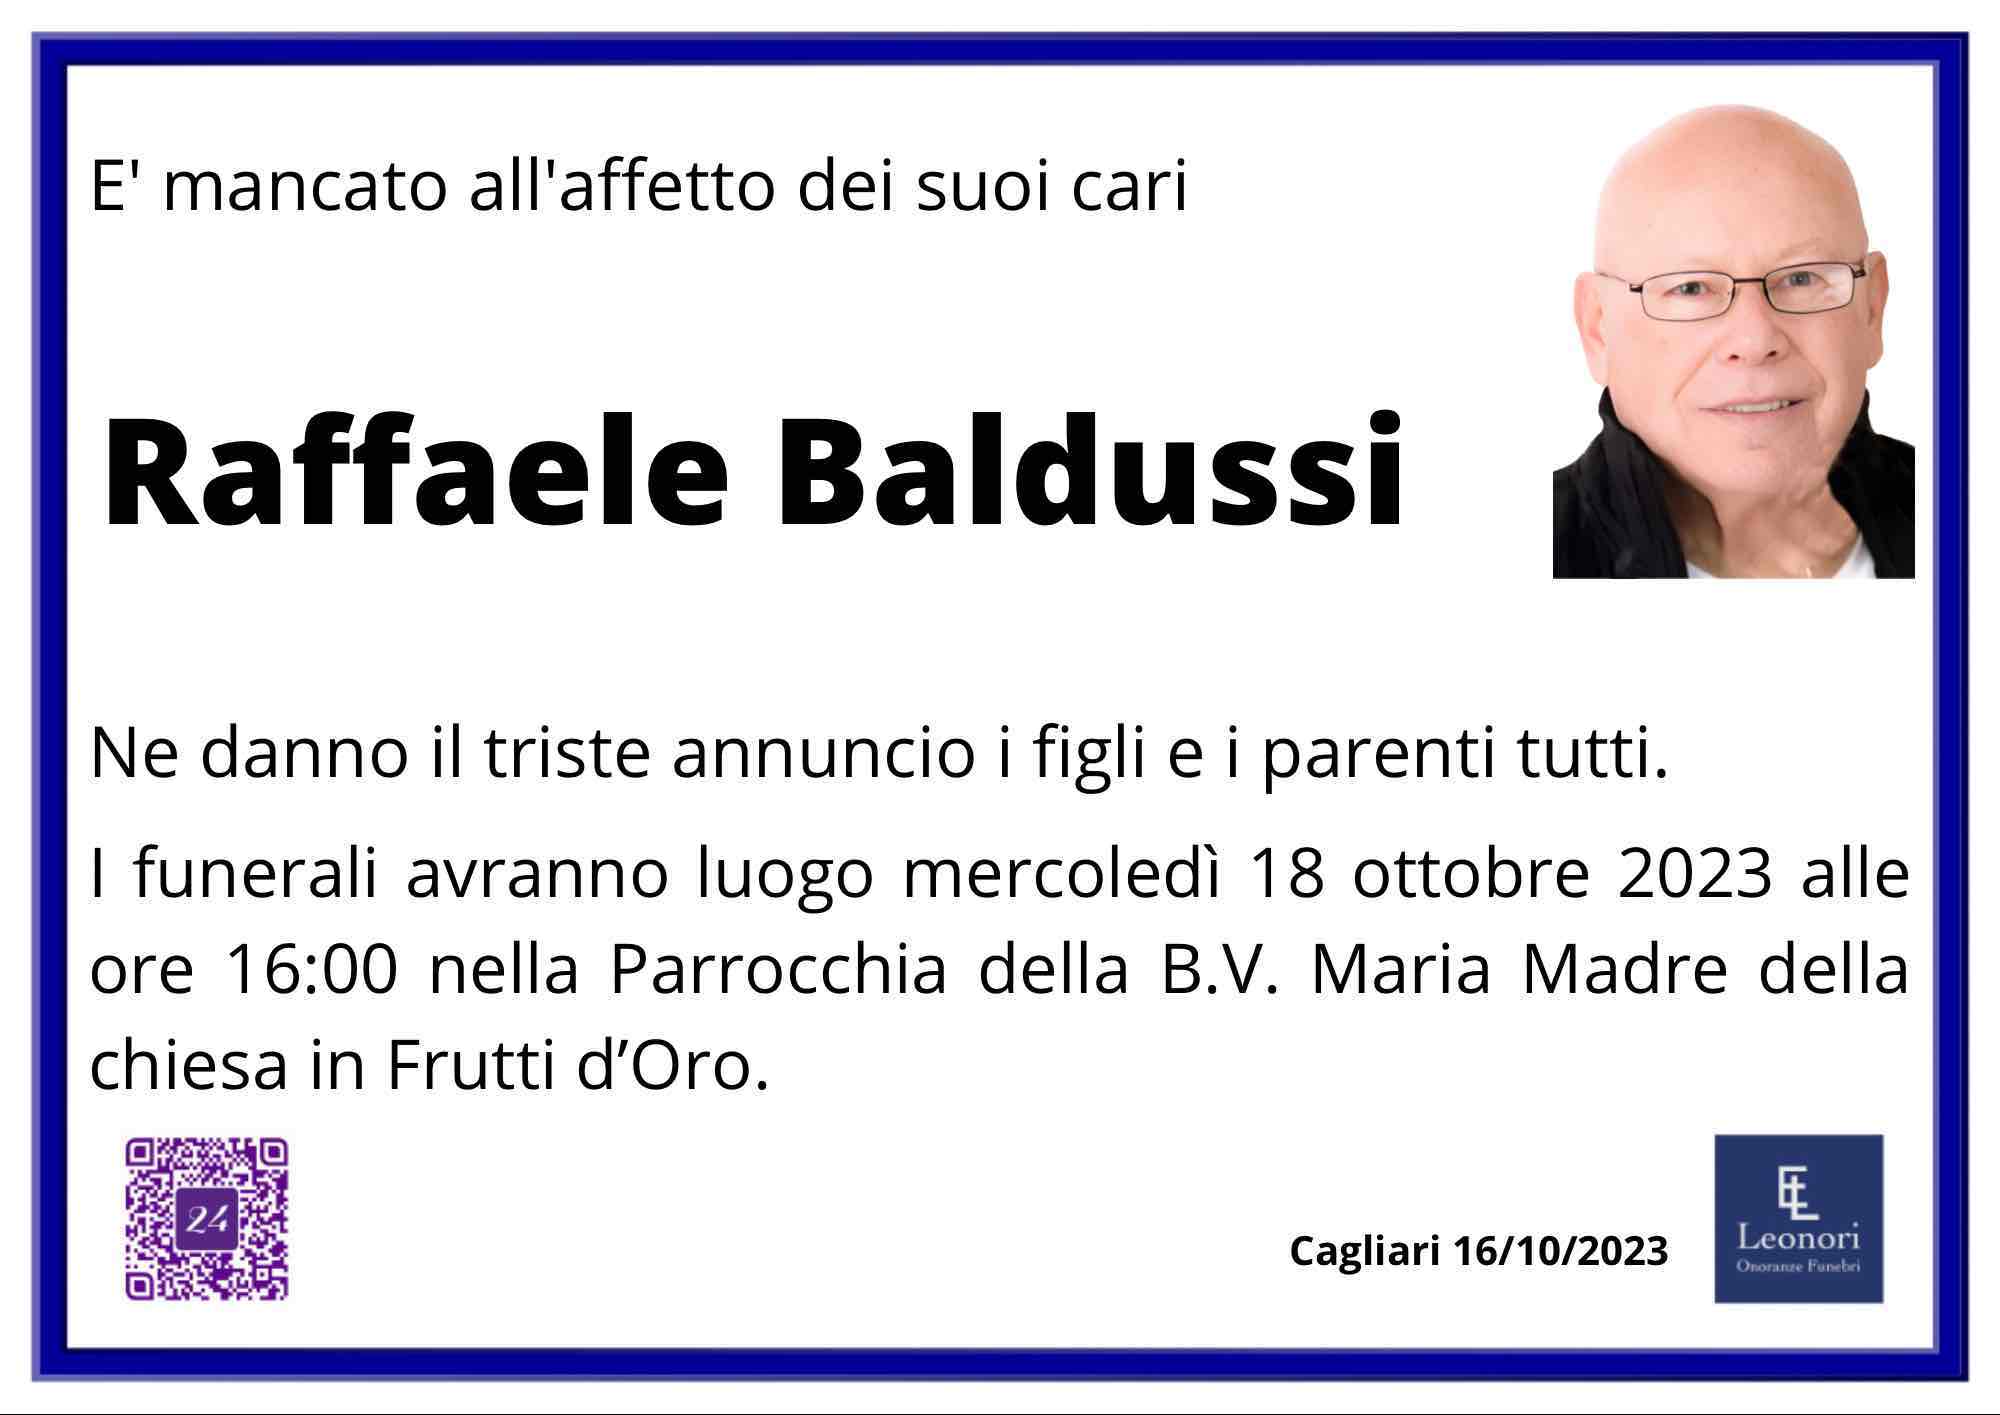 Raffaele Baldussi